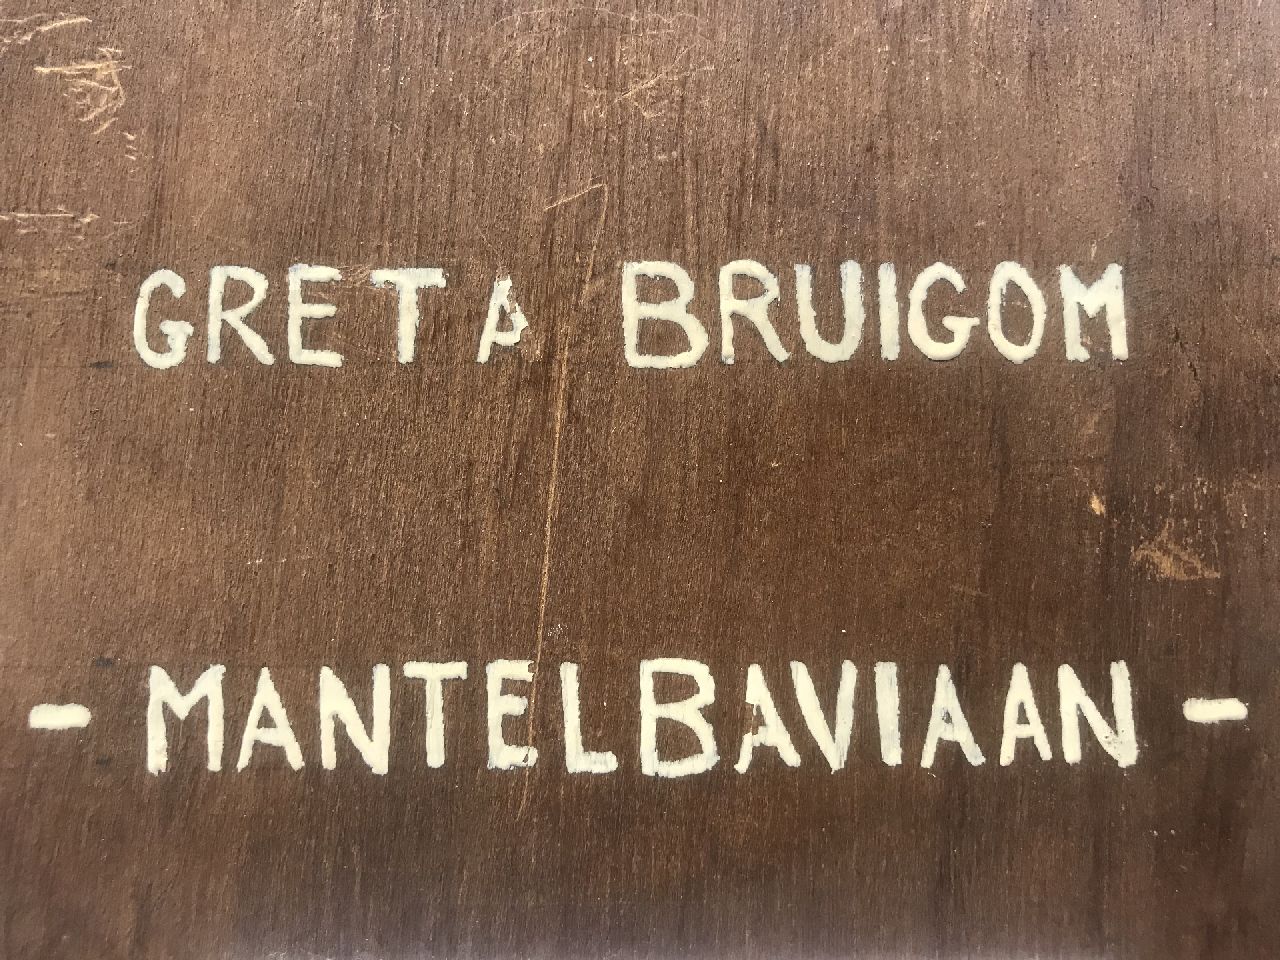 Greta Bruigom signaturen Mantelbaviaan